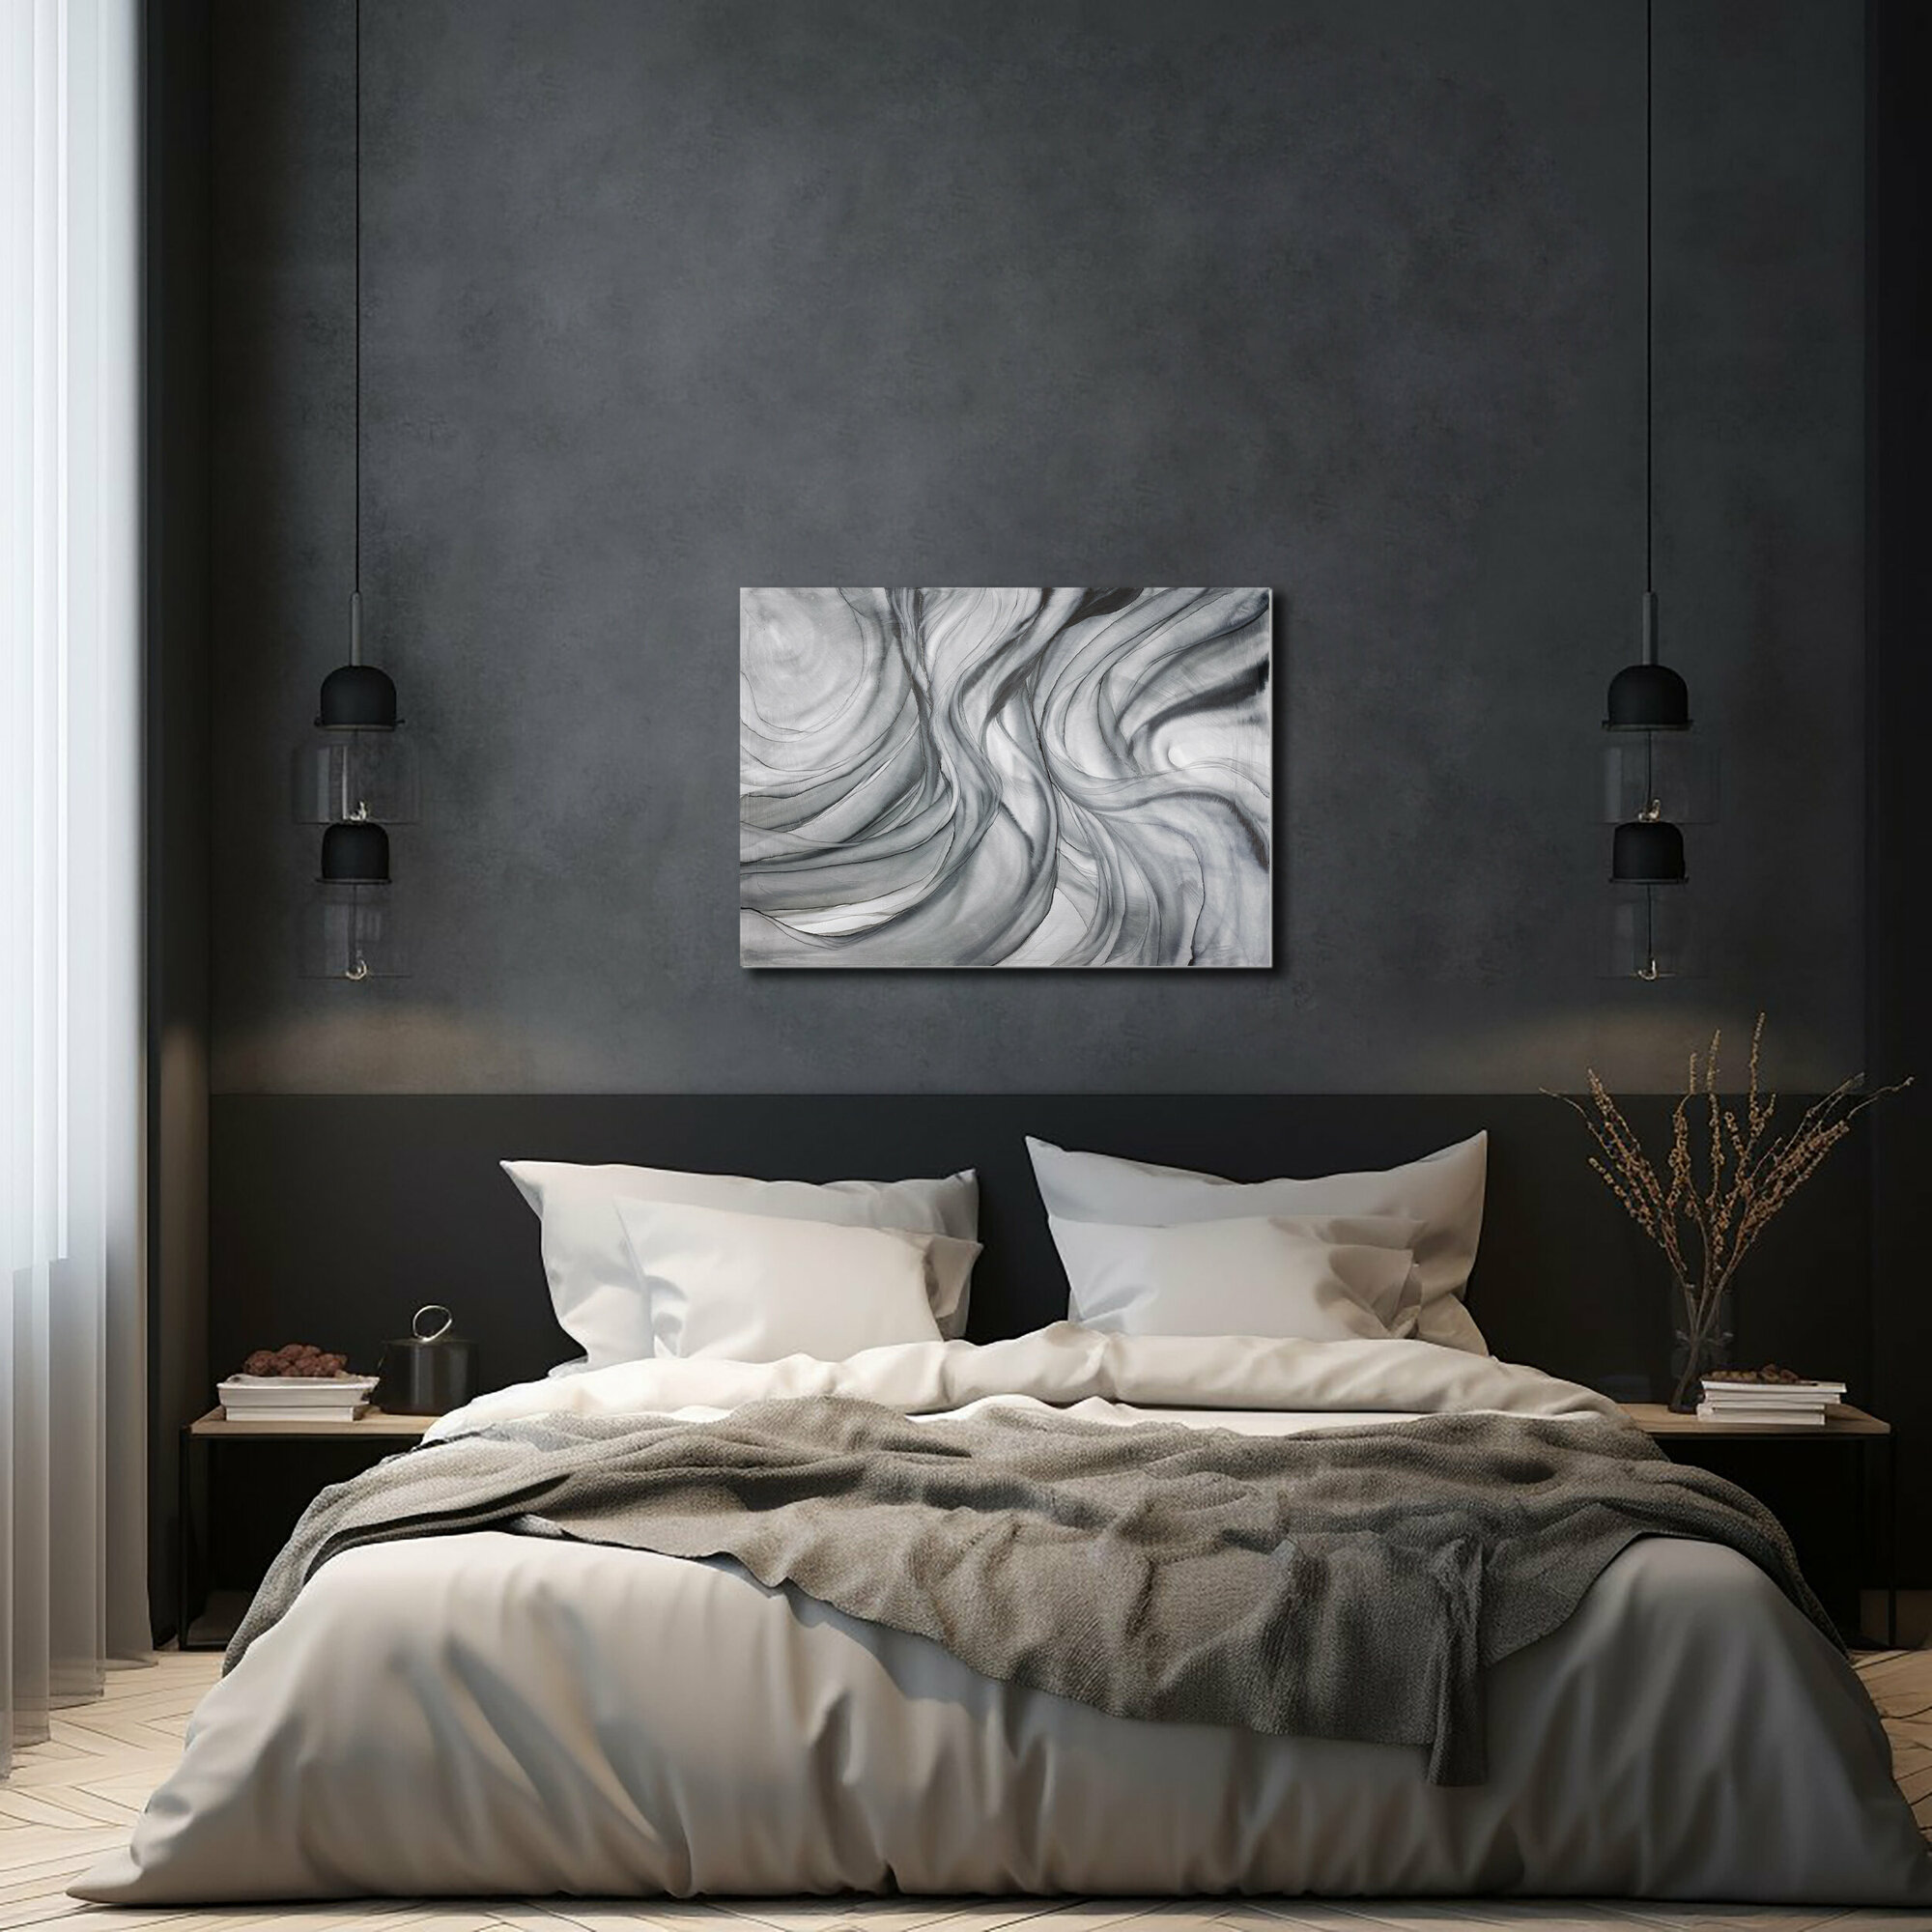 Картина-оригинал — чёрно-белая картина-абстракция на подрамнике 50х70 см флюид-арт спиртовыми чернилами – Морской узел